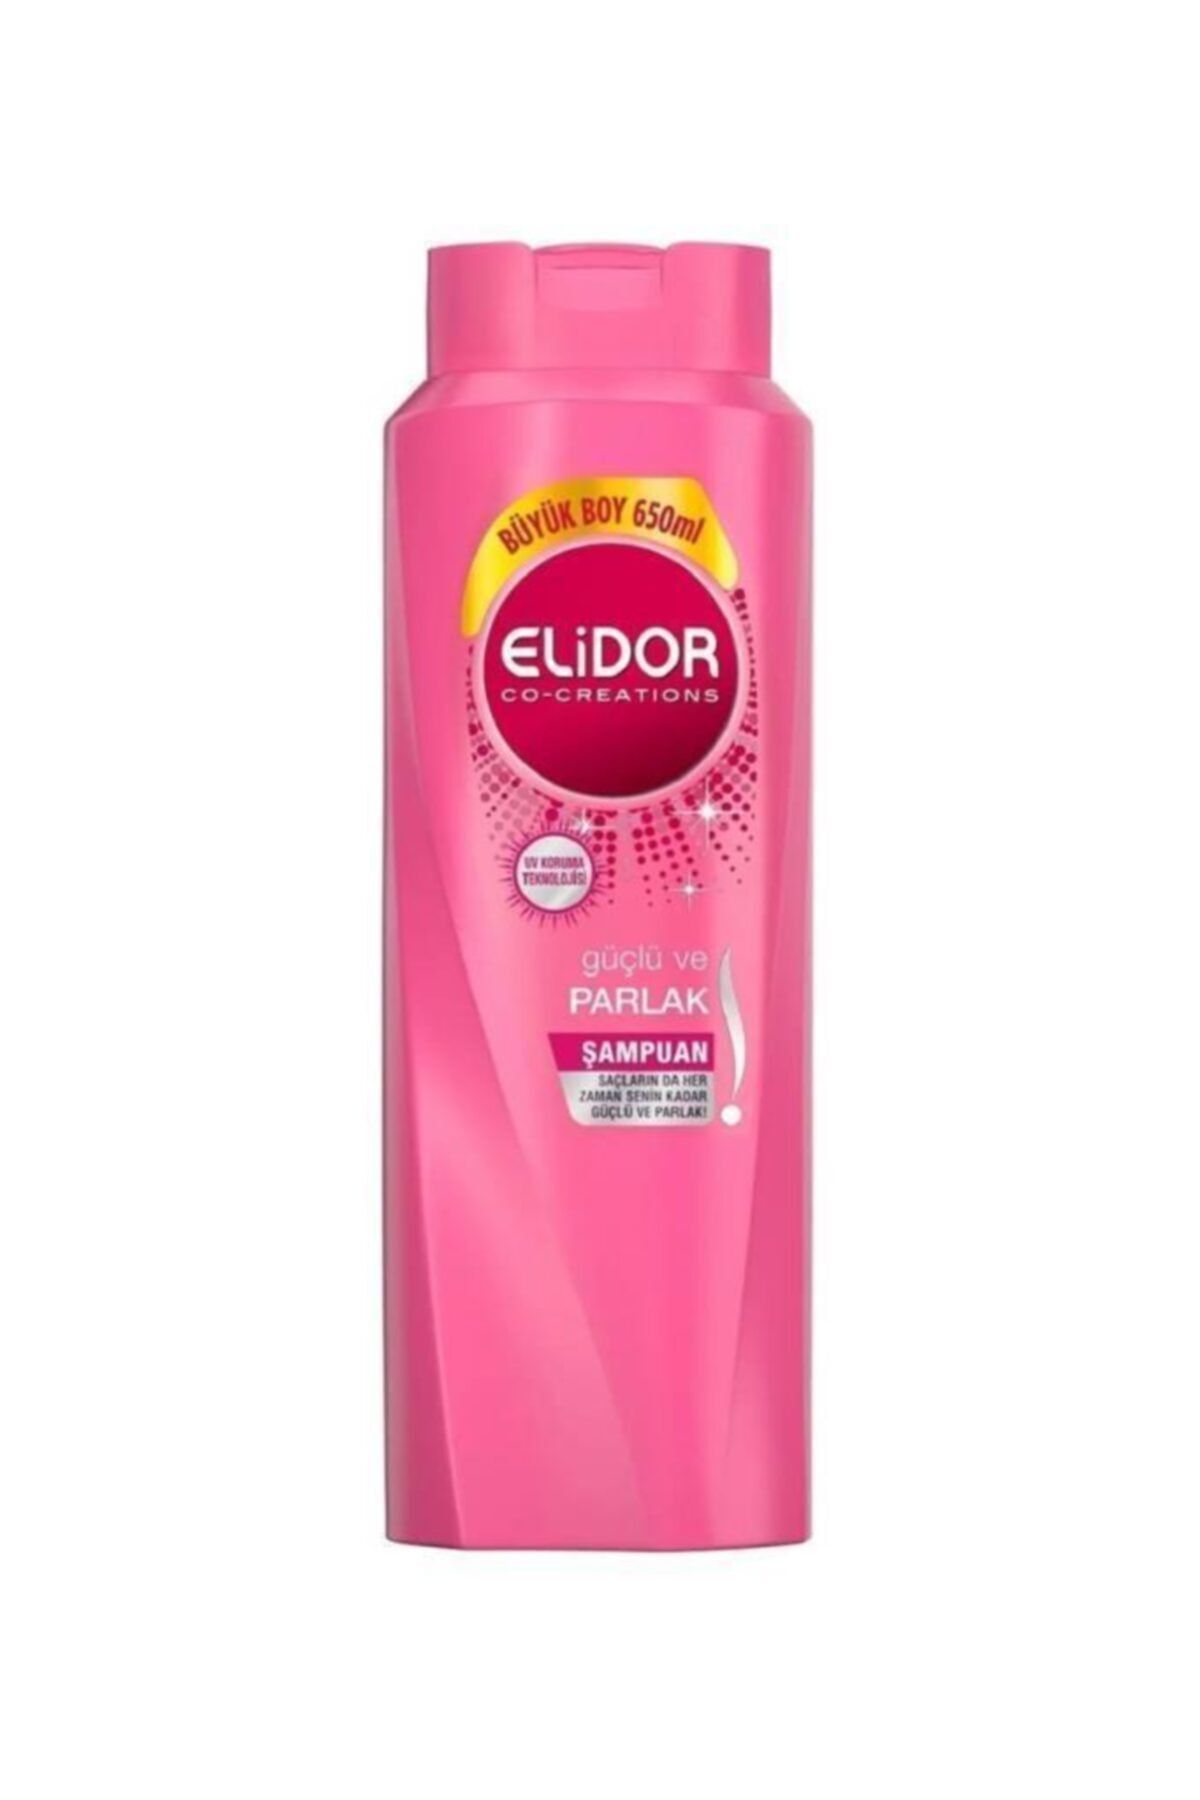 Elidor Güçlü Ve Parlak Saç Bakım Şampuanı 650 ml